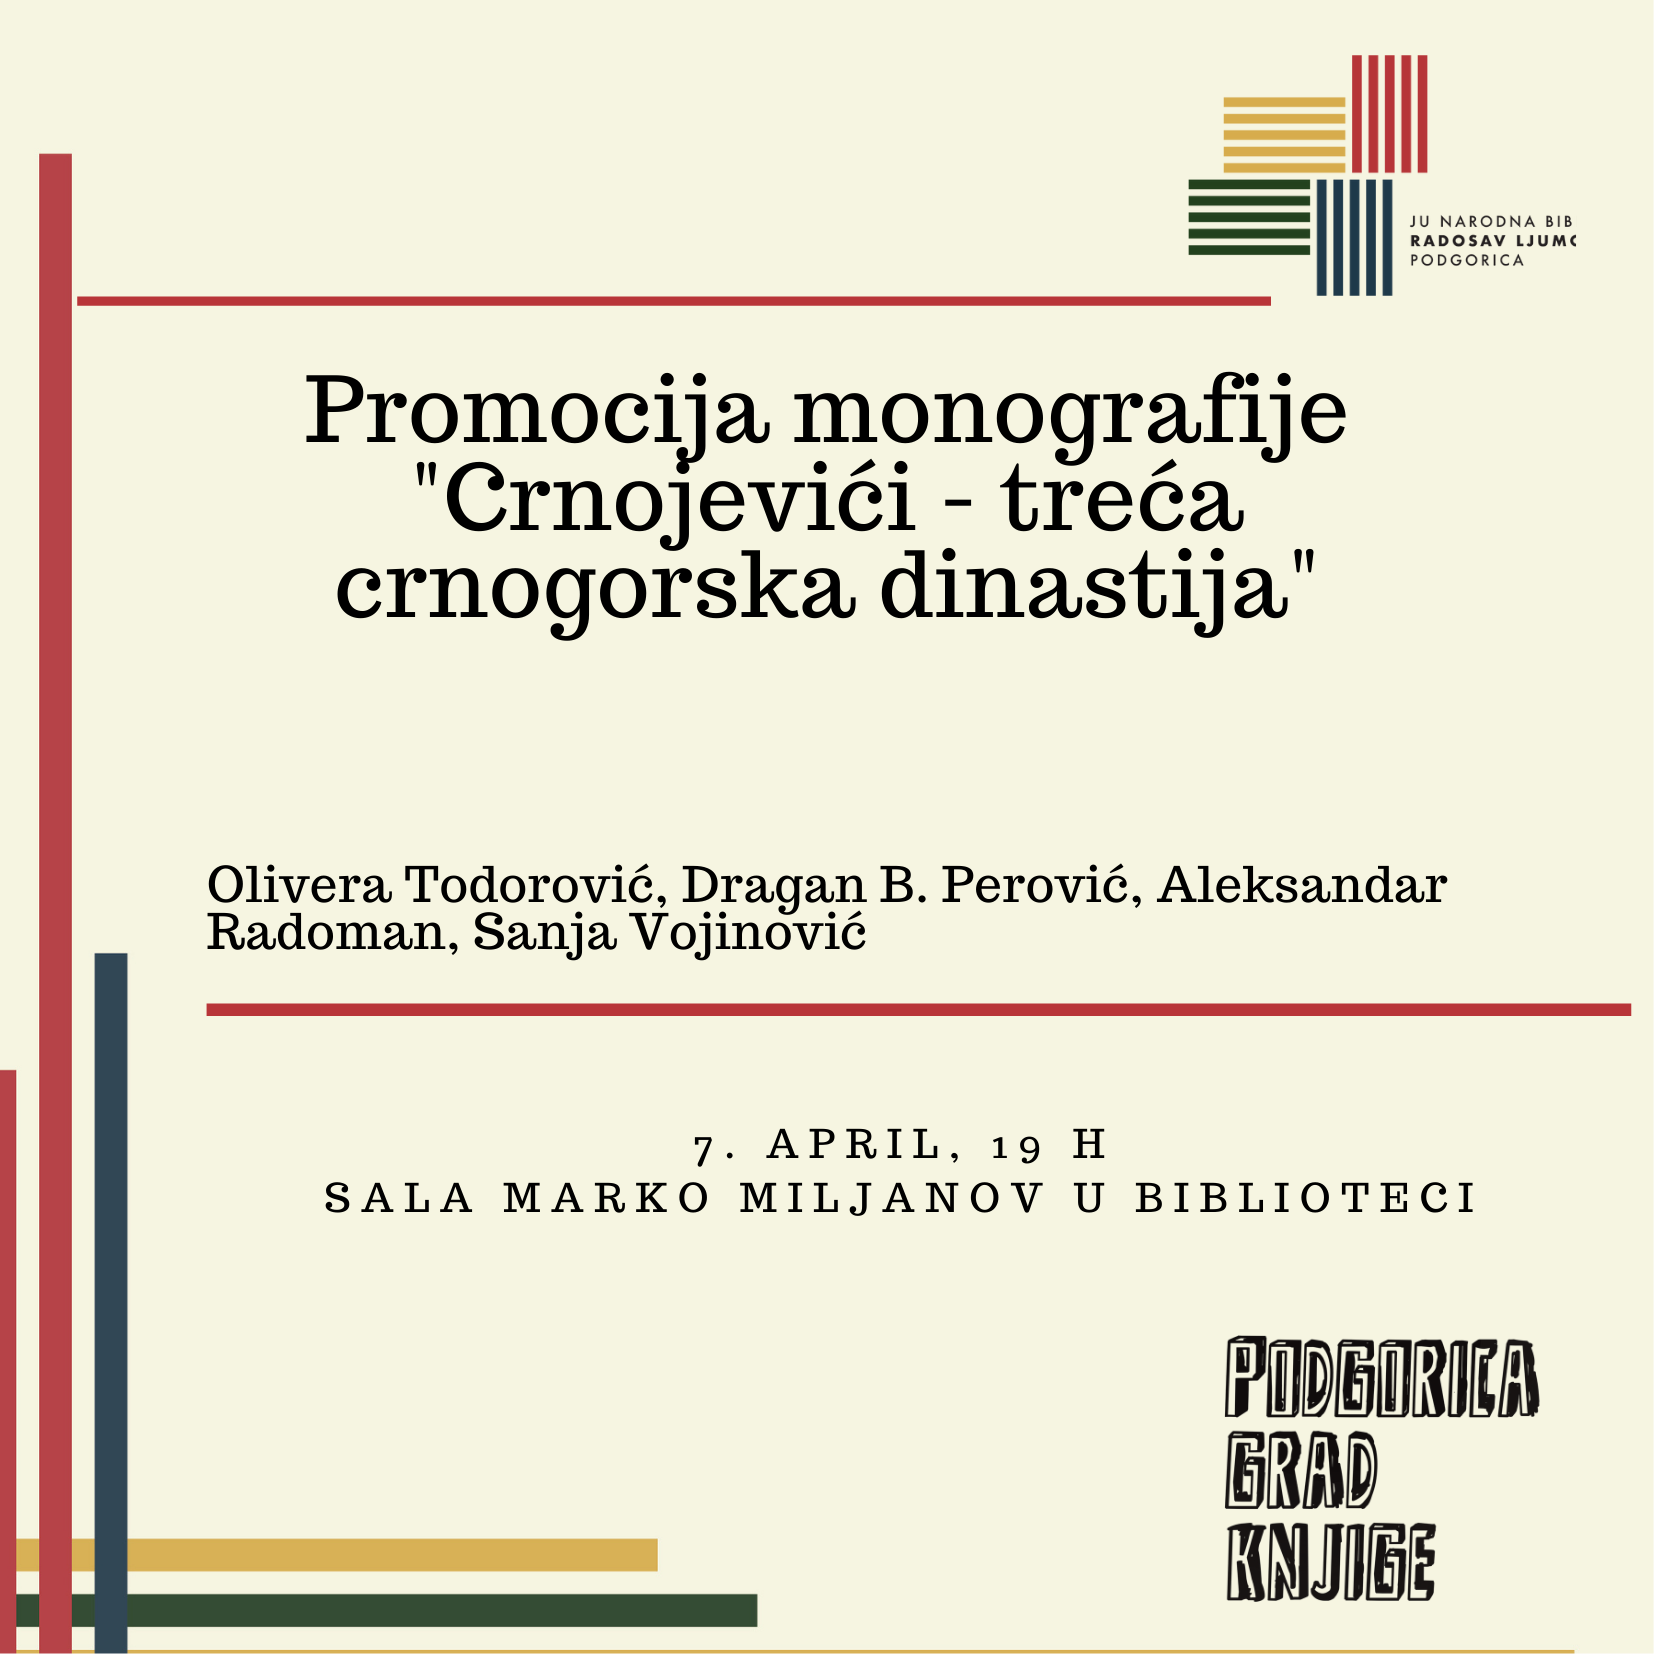 Promocija monografije "Crnojevići – treća crnogorska dinastija"